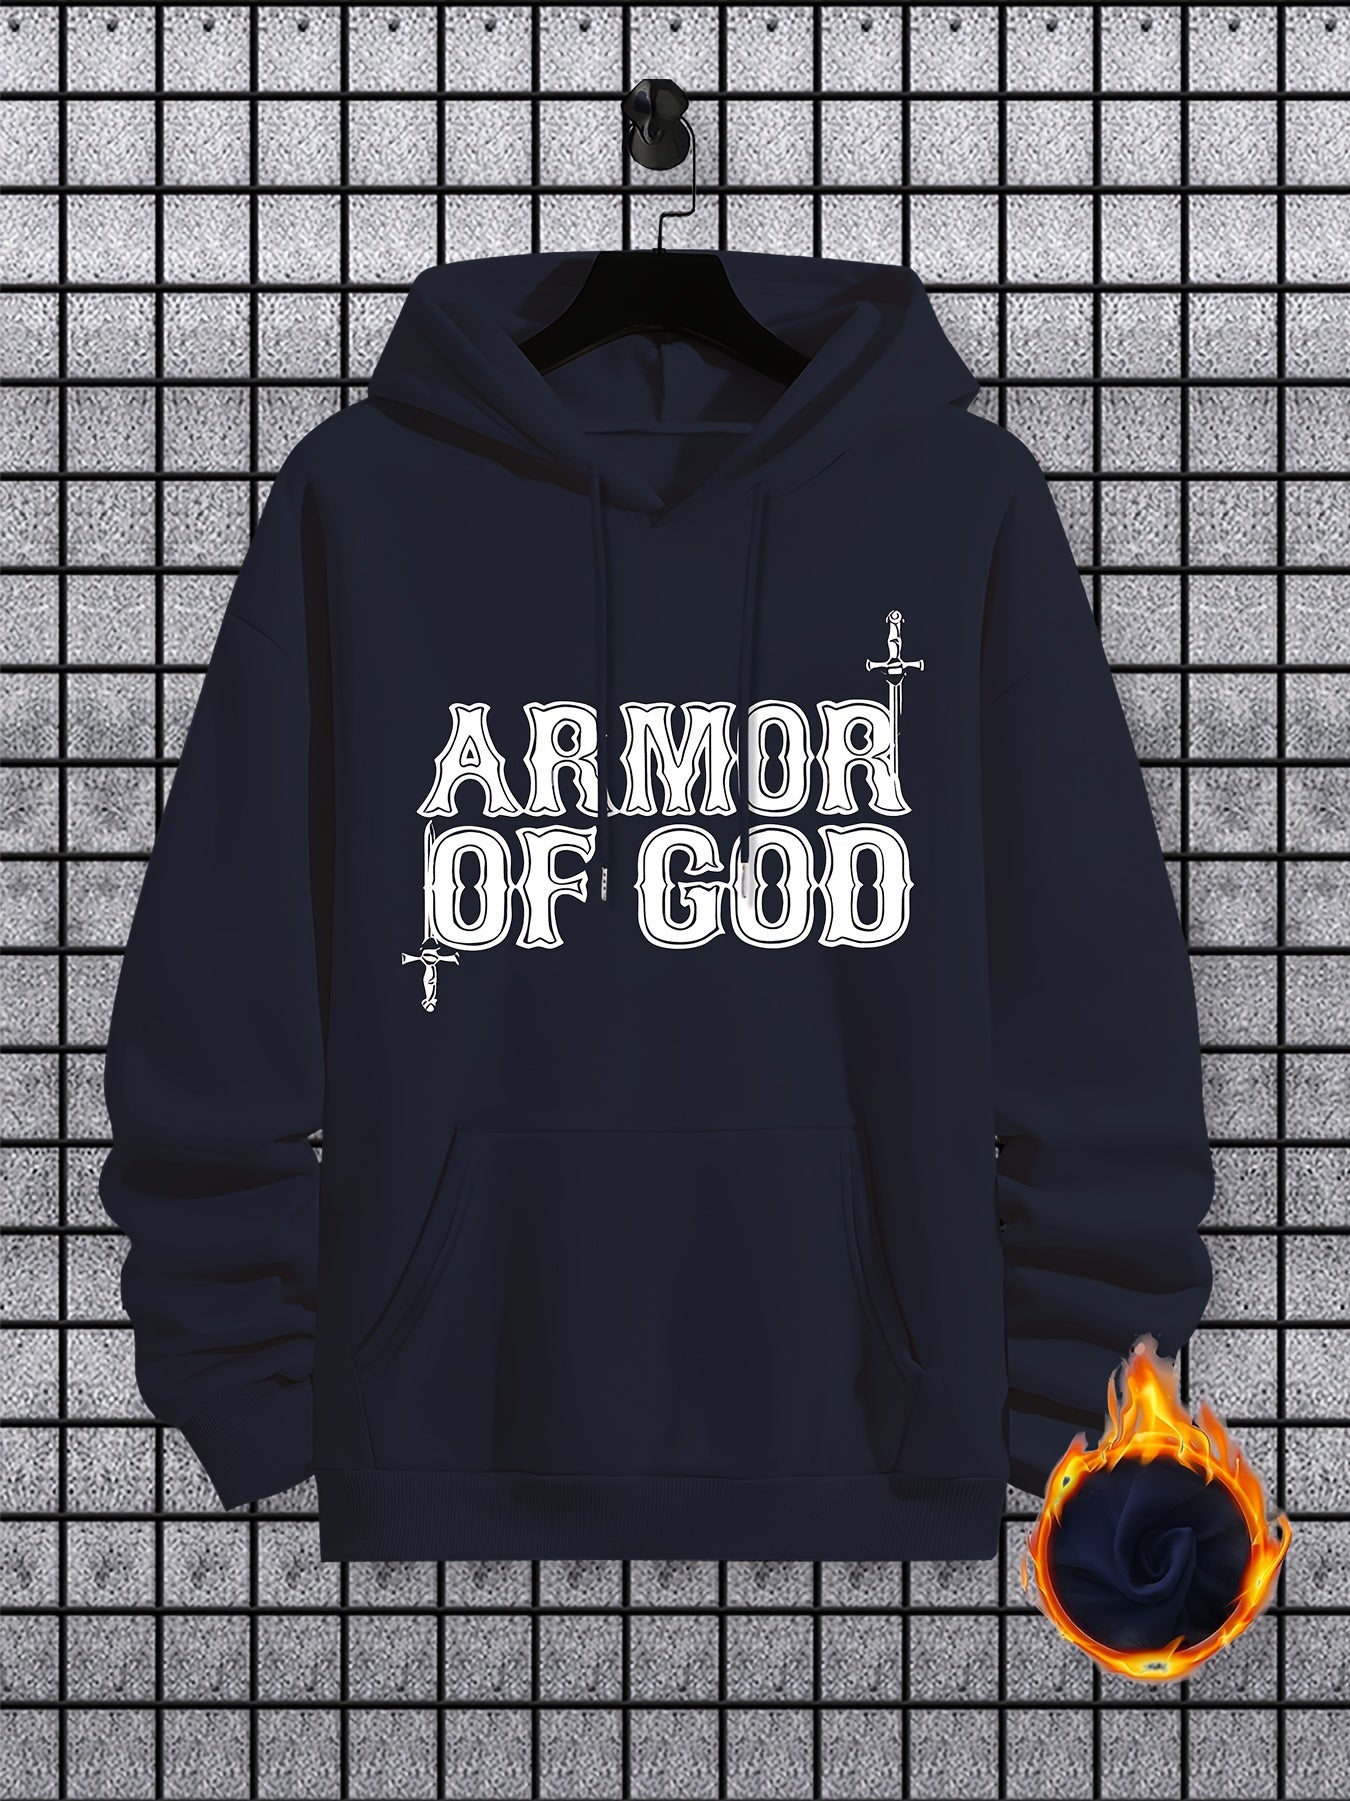 Armor Of God Men's Christian Pullover Hooded Sweatshirt claimedbygoddesigns